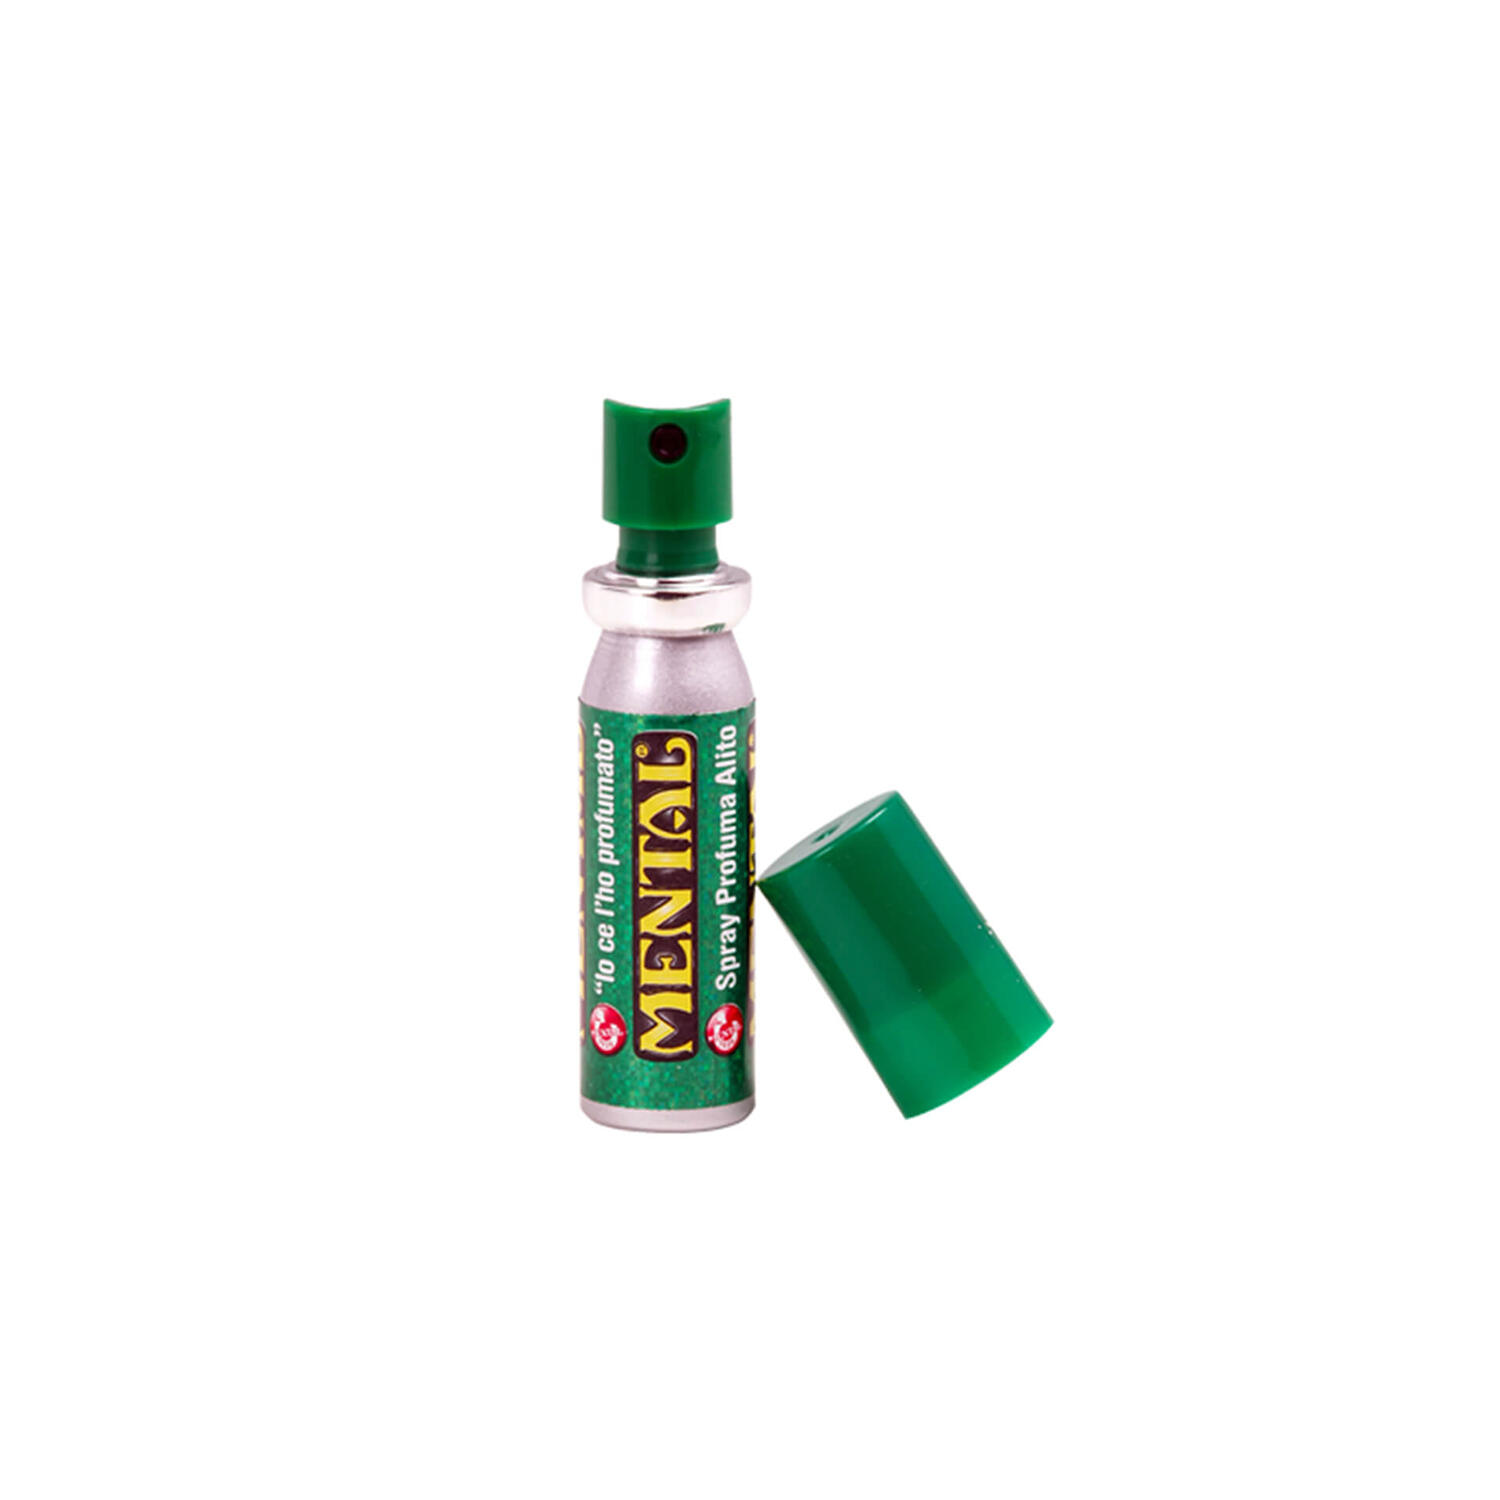 Mint Spray Mental – spray 18 ml - Single Pack - Spray